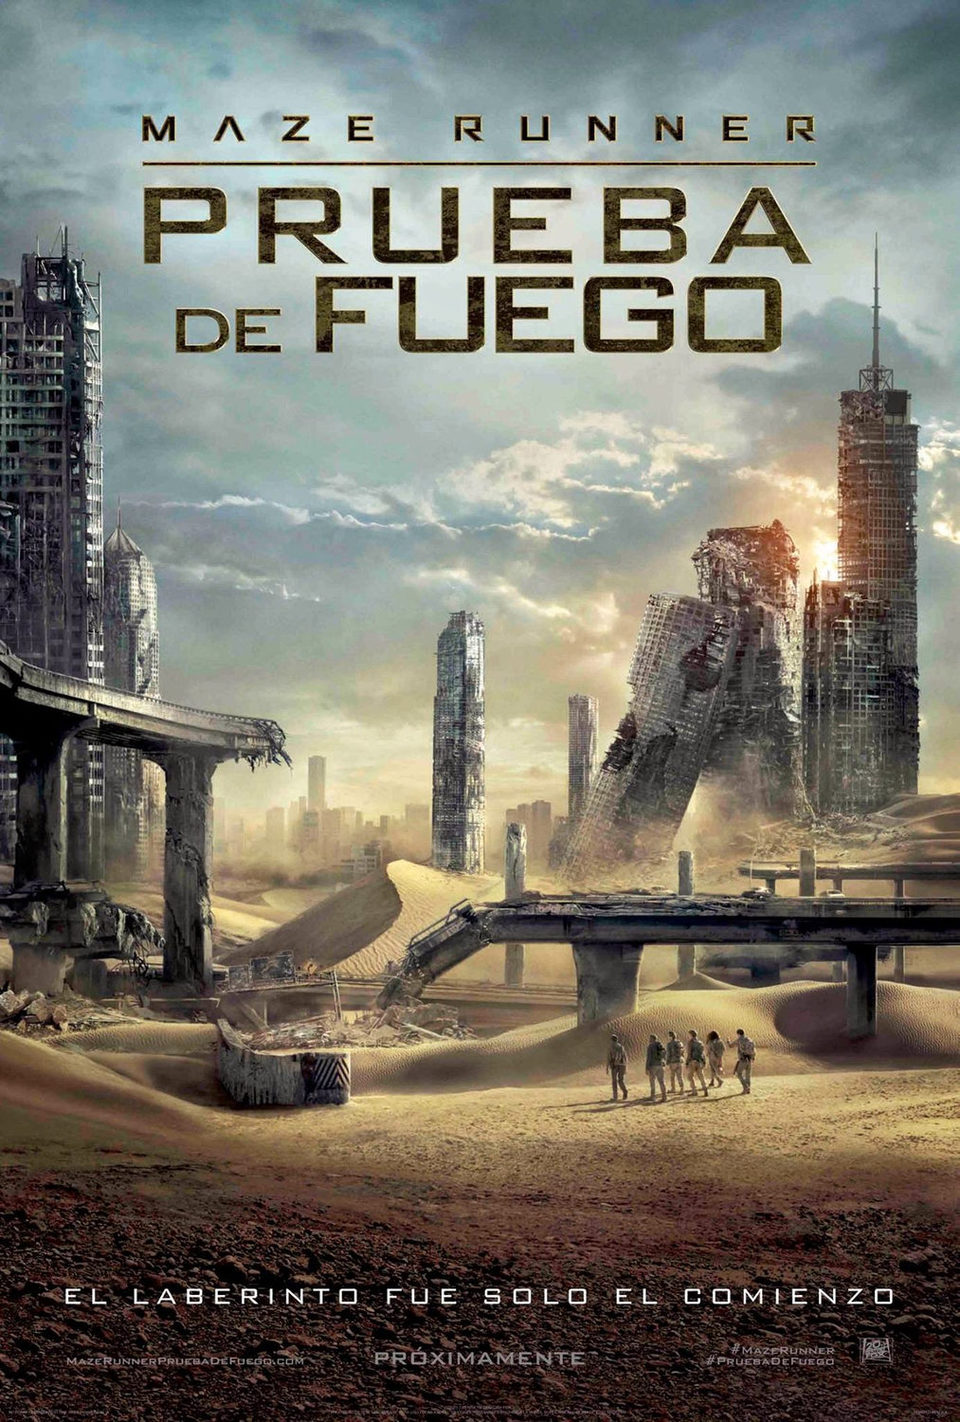 Poster of Maze Runner: The Scorch Trials - México